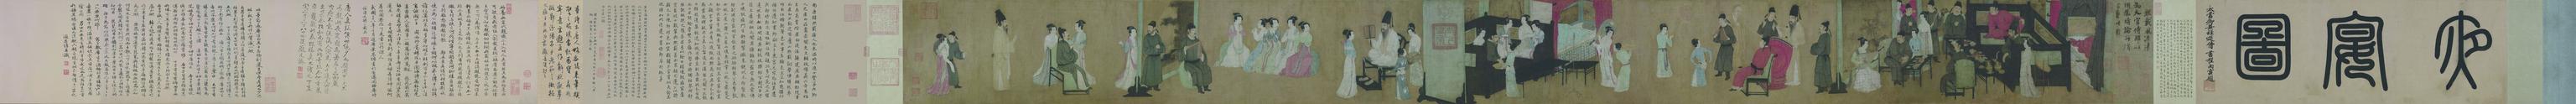 你不了解的“东方神画”《韩熙载夜宴图》描绘古人的夜生活